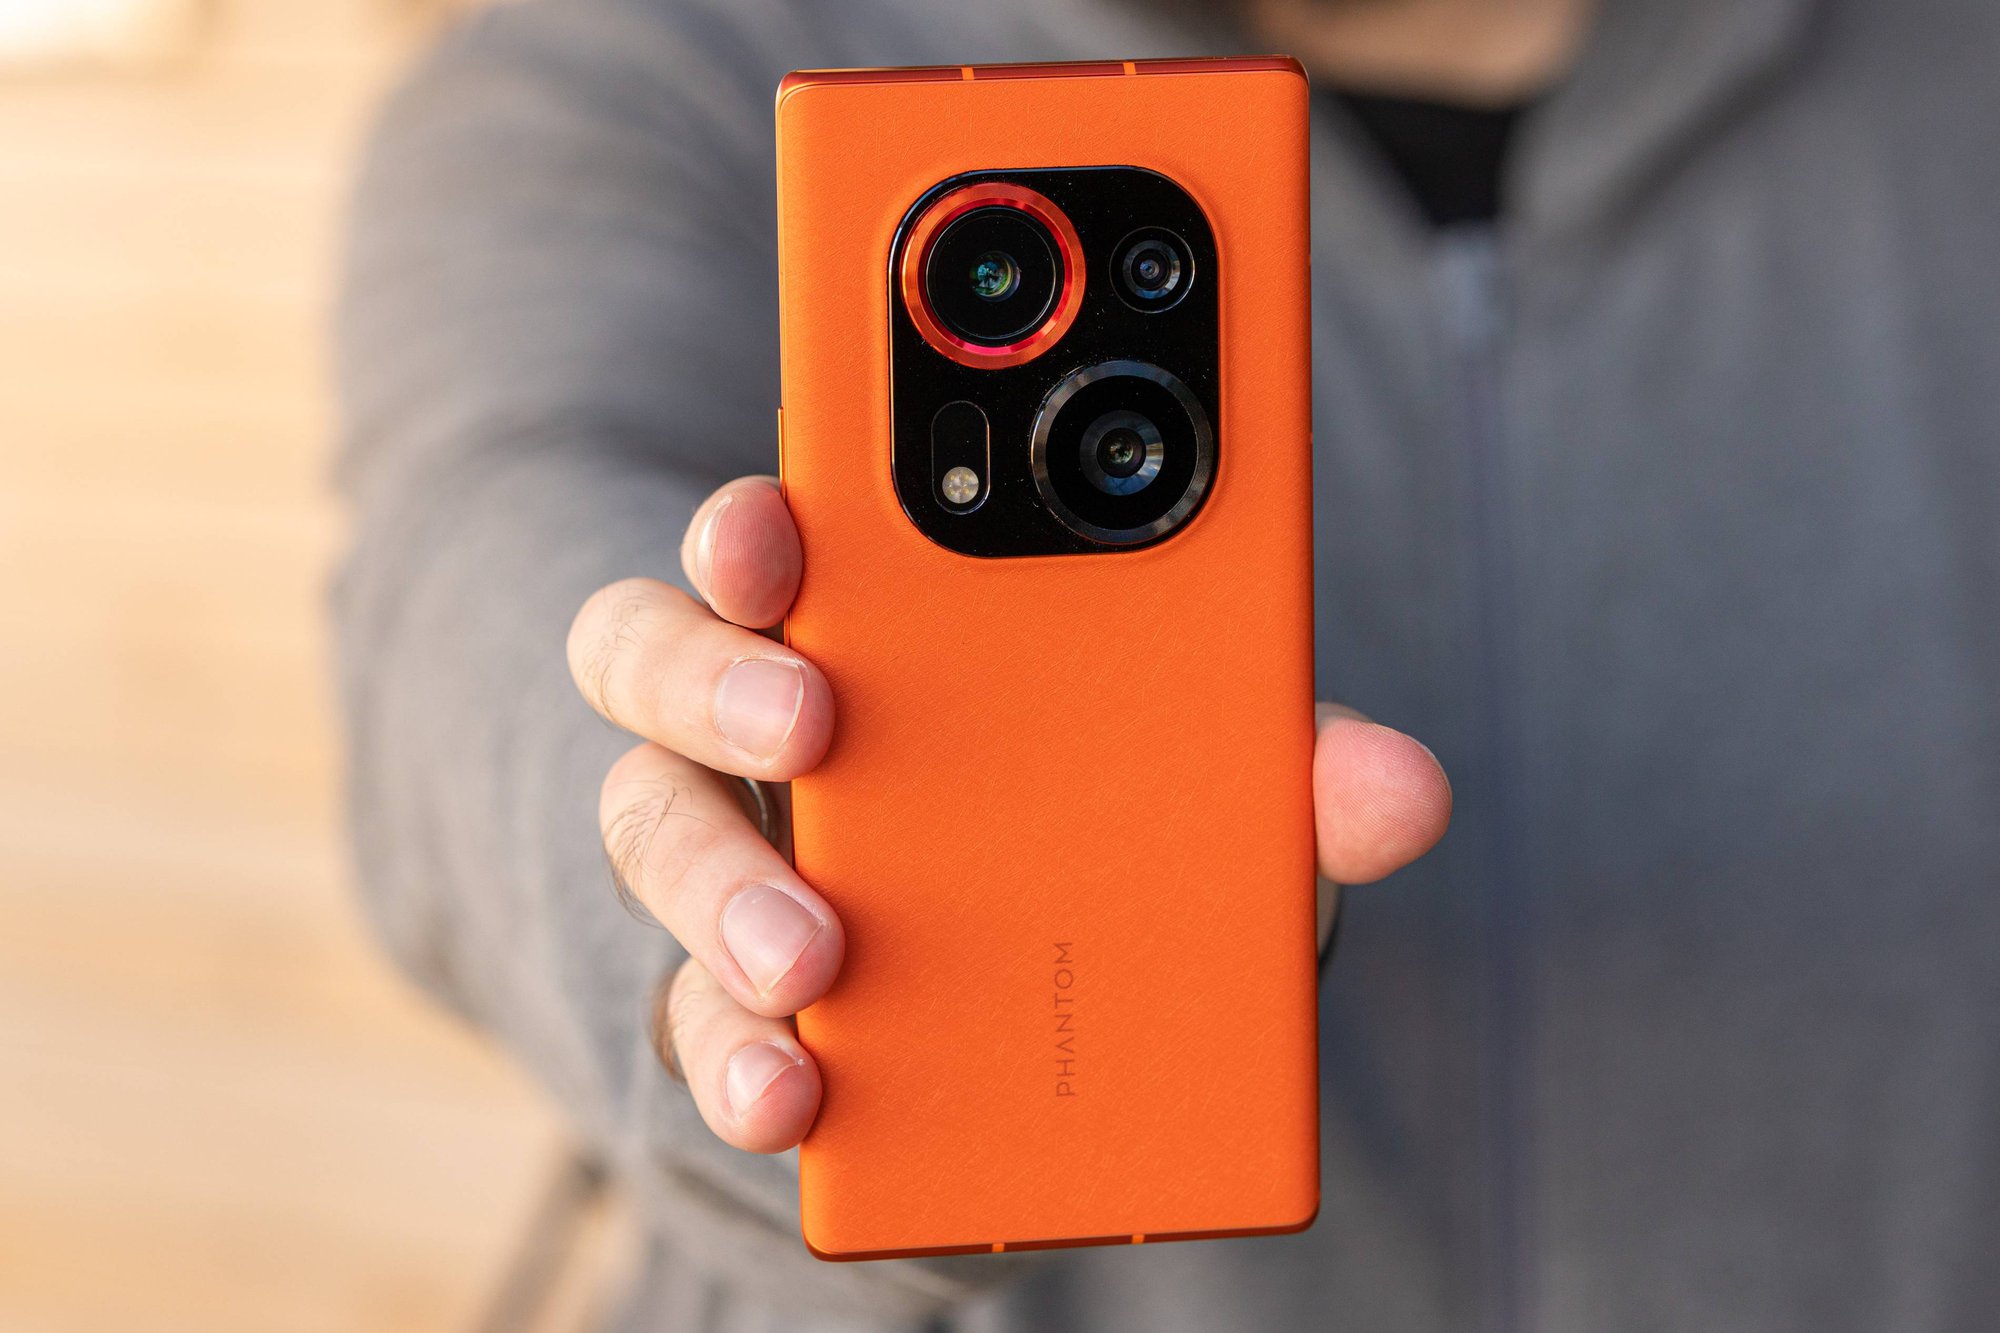 Tecno ra mắt điện thoại cao cấp có camera độc lạ - Ảnh 4.